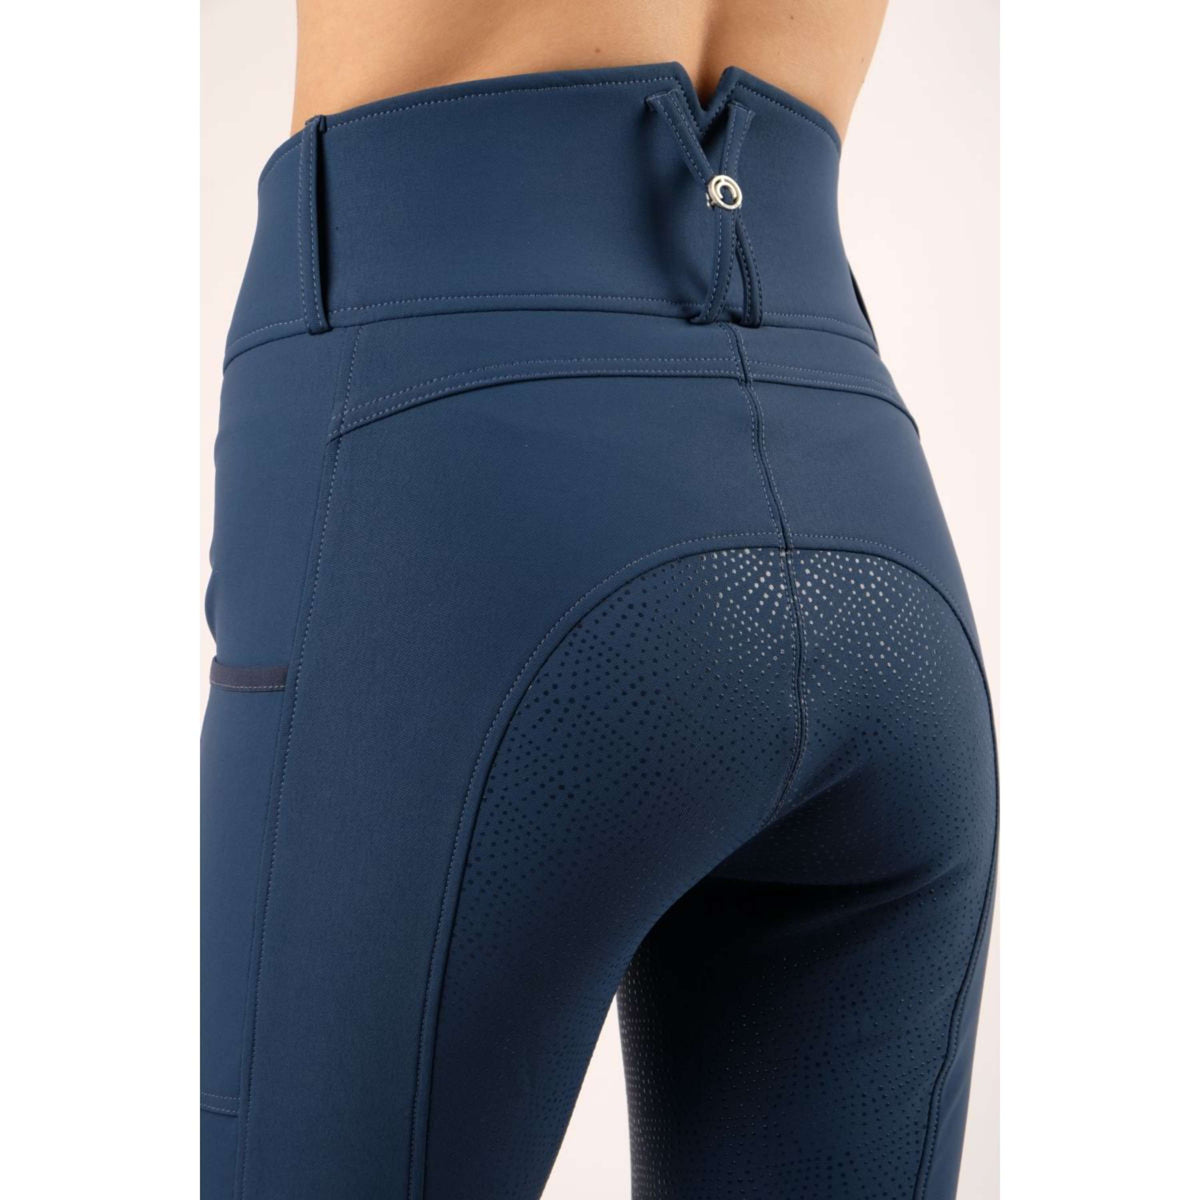 Montar Pantalon d'Équitation Mya extra Highwaist Full Grip Bleu moyen